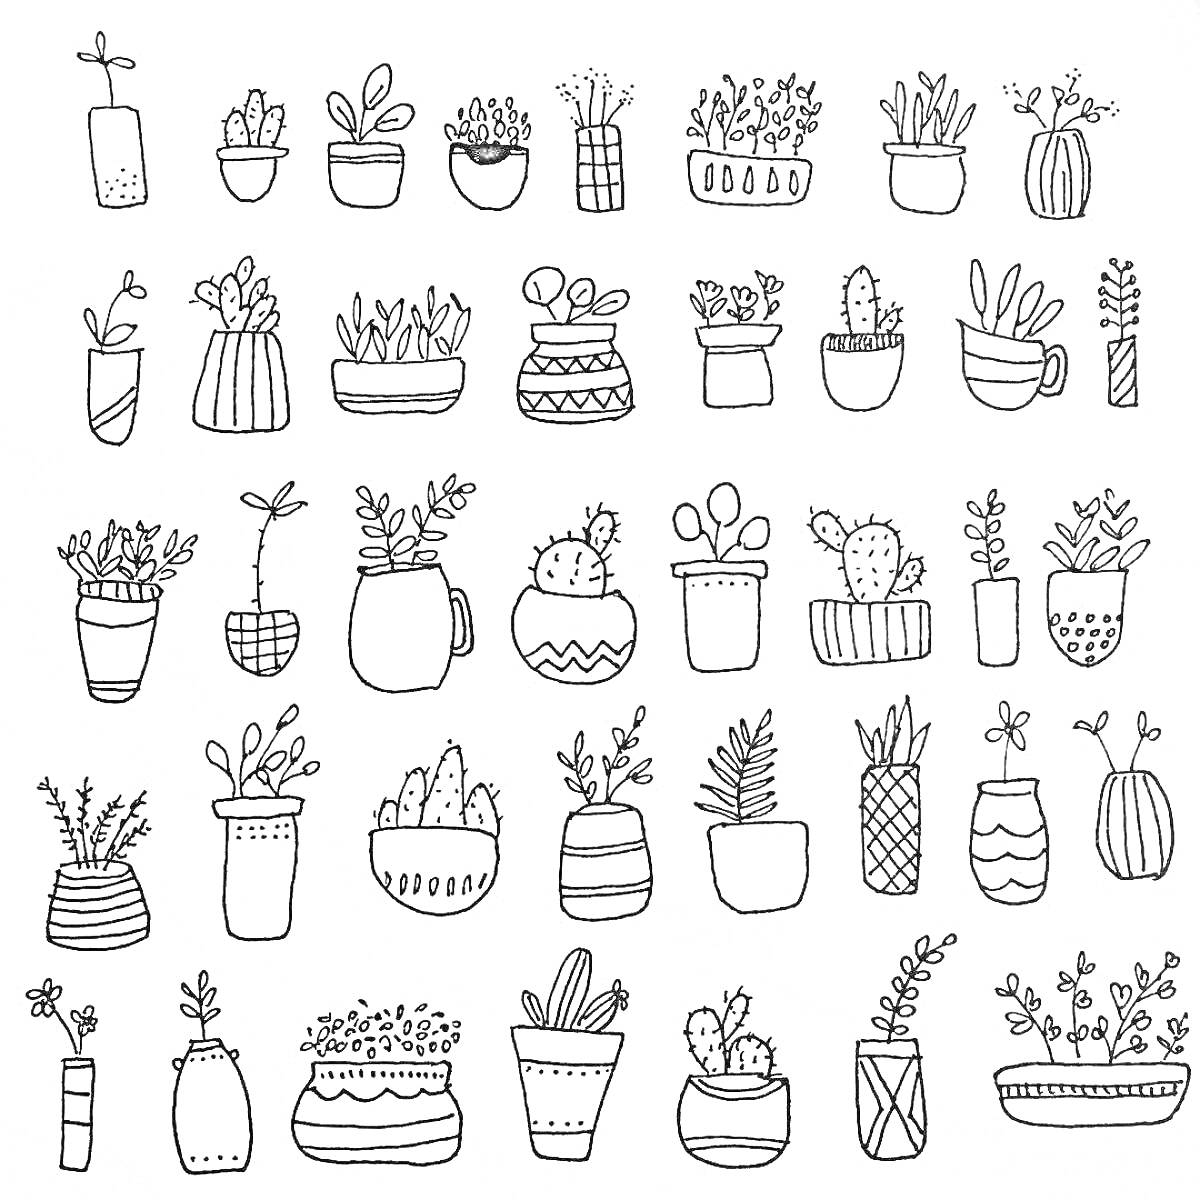 Раскраска Черно-белая раскраска с горшками и растениями, включая суккуленты, кактусы и комнатные растения